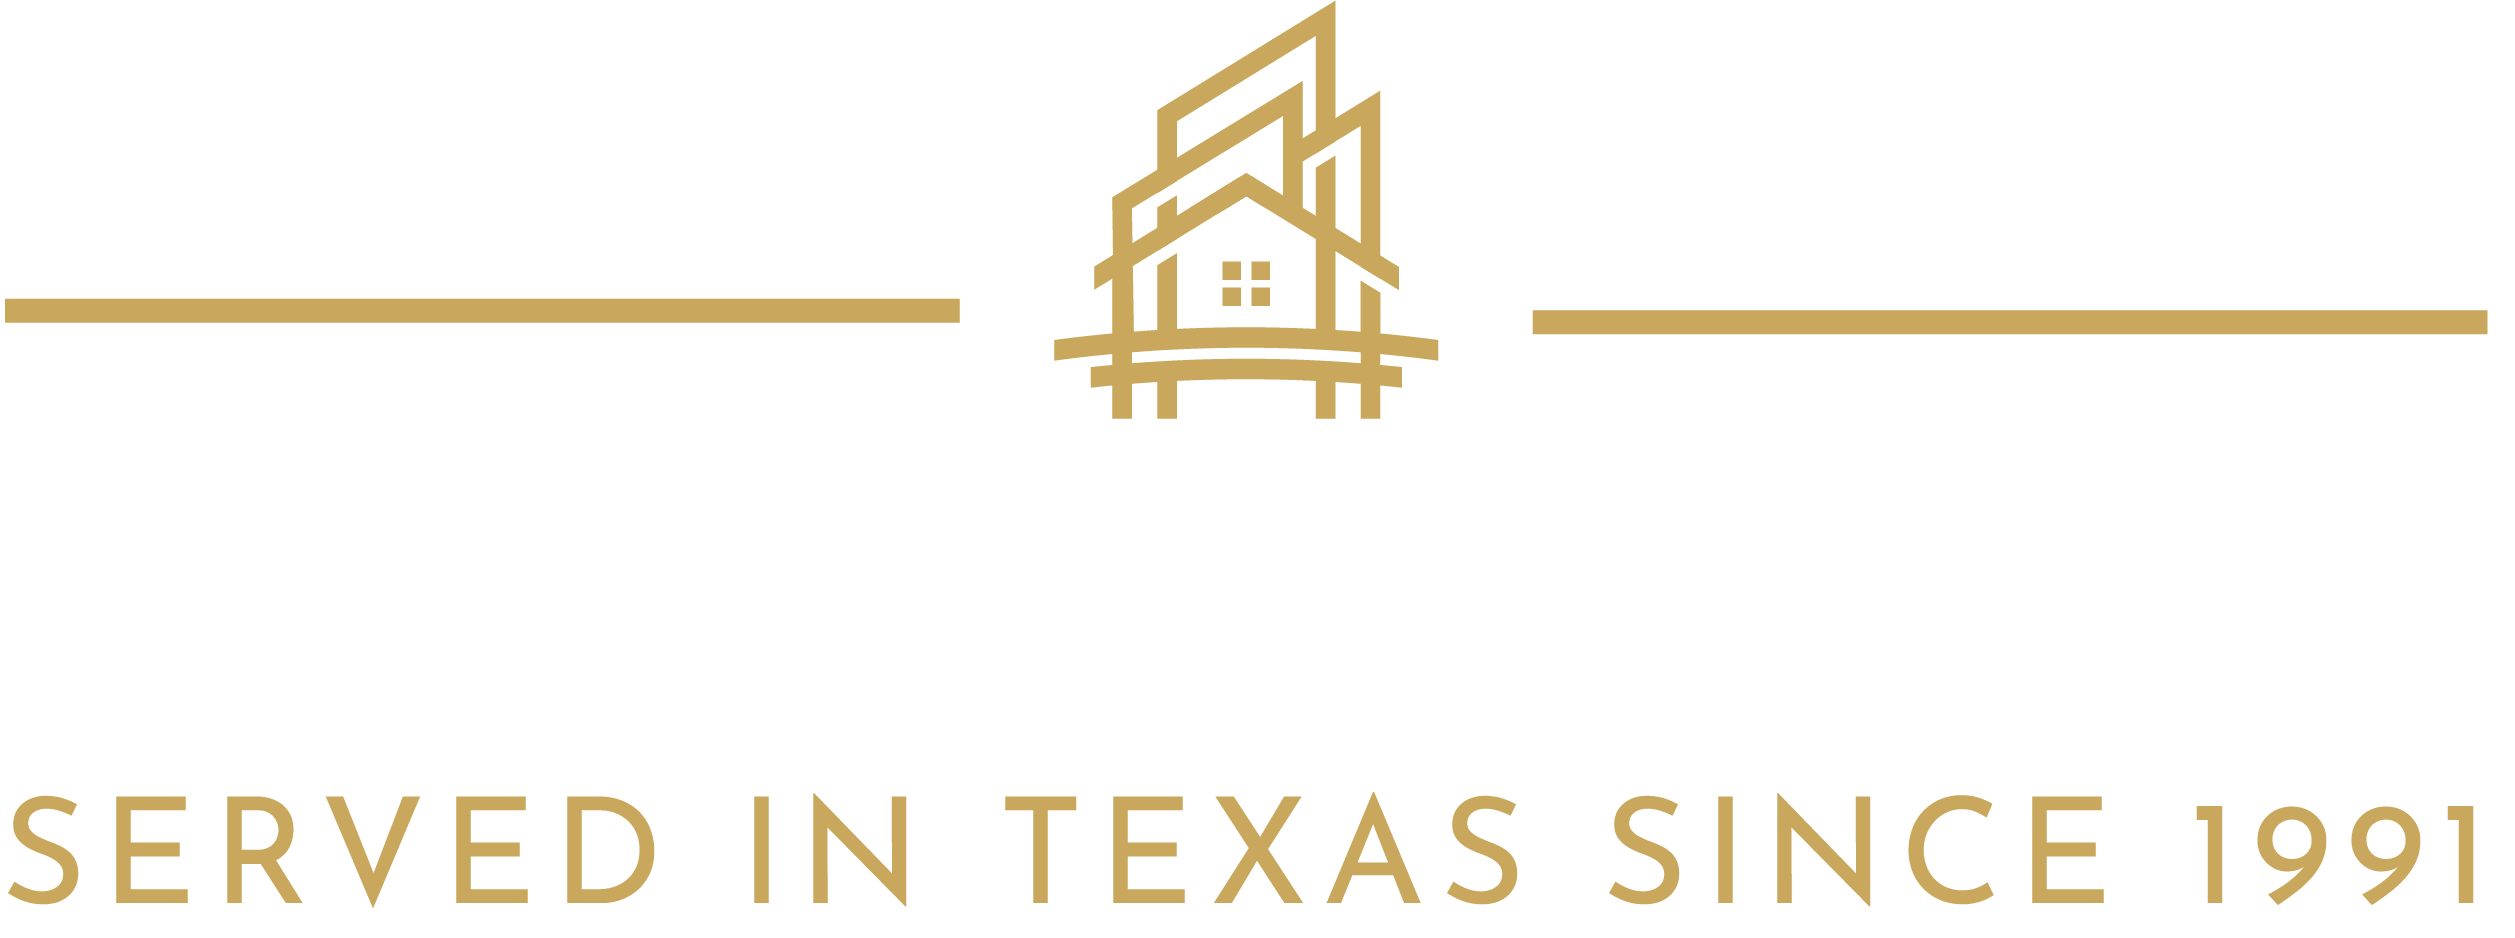 J Realty's logo